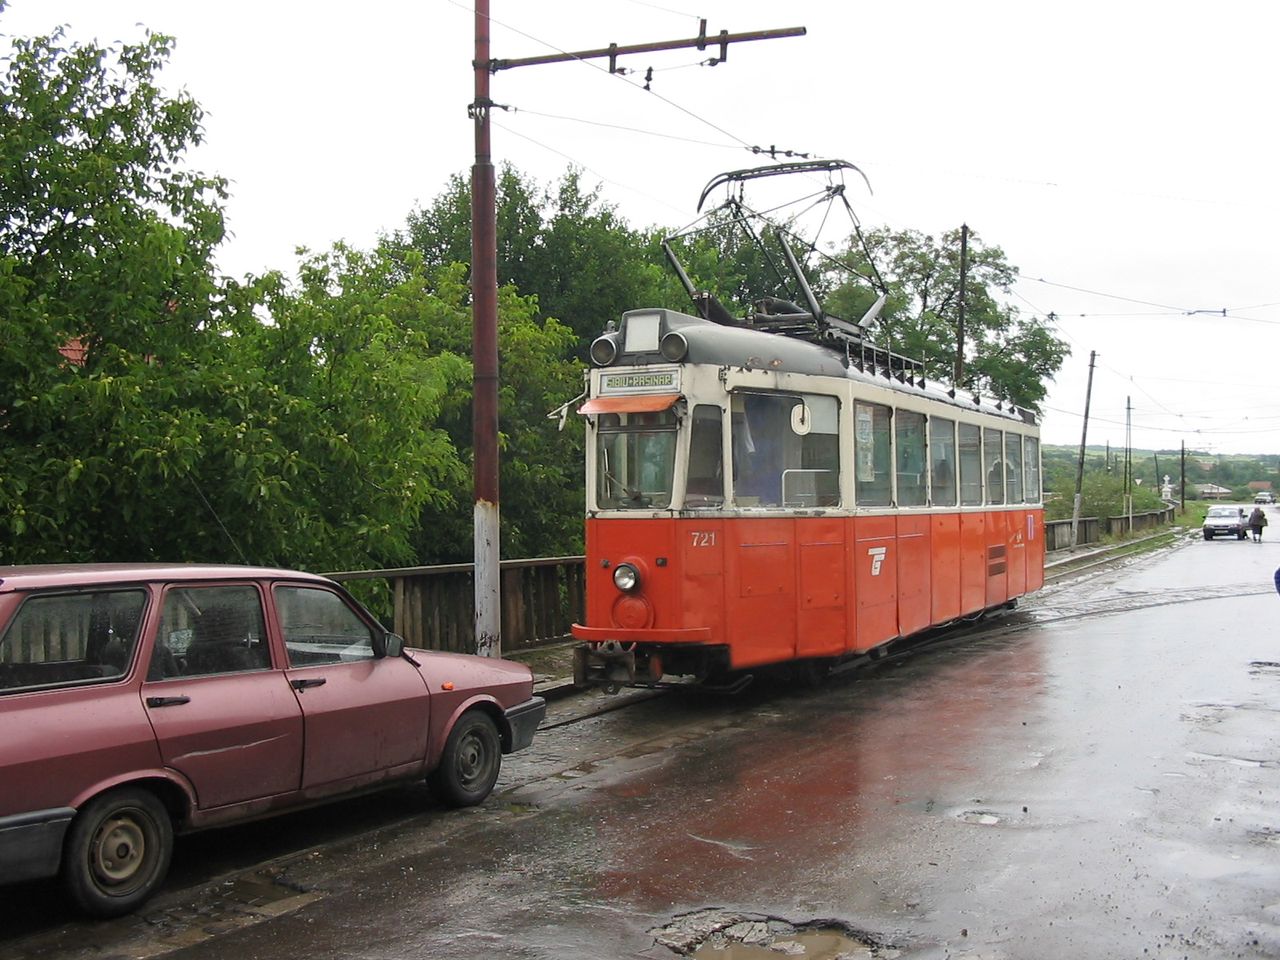 Resinár végállomás a 721-es exgenfi motorkocsival 2004-ben. A járművezető elment megkeresni a villamos útját elálló Dacia tulajdonosát. A képre kattintva galéria nyílik (fotó: Indóház-archív | a szerző)